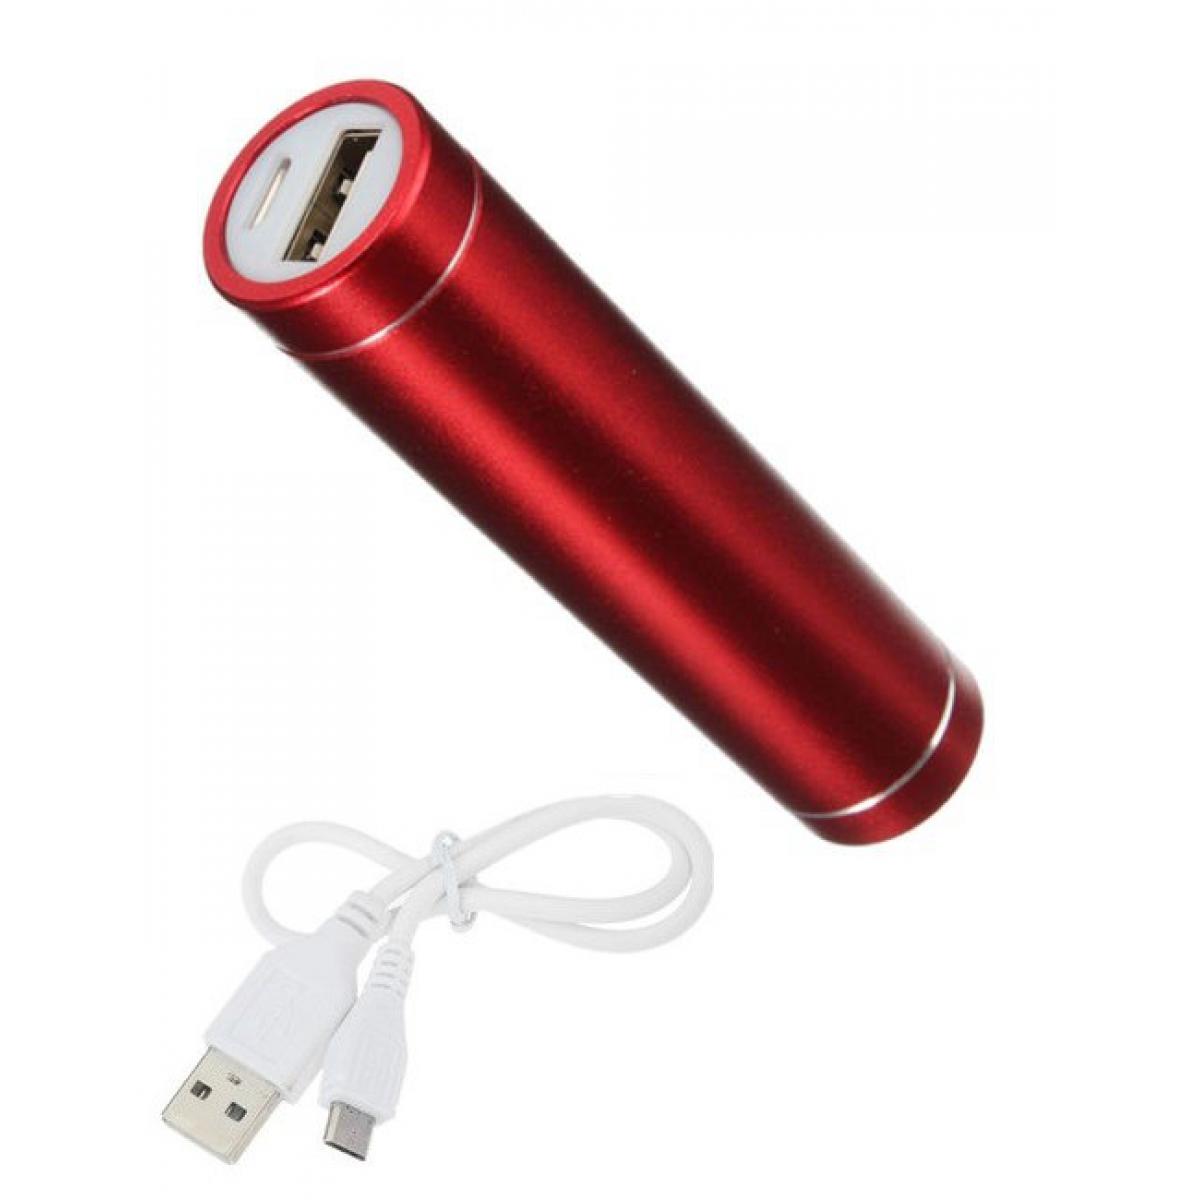 Shot - Batterie Chargeur Externe pour ALCATEL 1 2019 Power Bank 2600mAh avec Cable USB/Mirco USB Secours Telephone (ROUGE) - Chargeur secteur téléphone